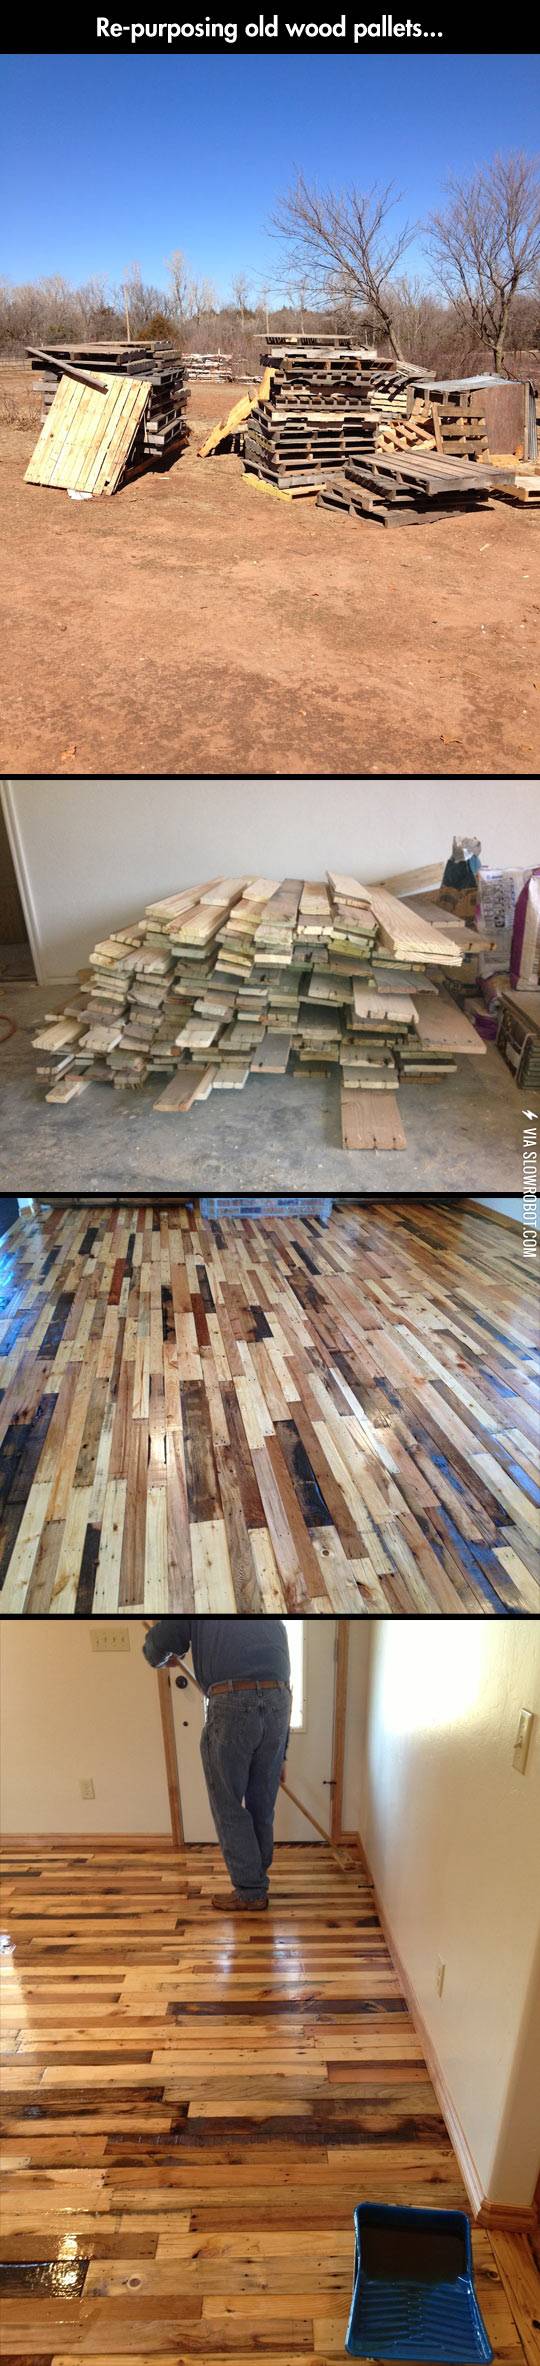 Repurposing+old+wood+pallets.